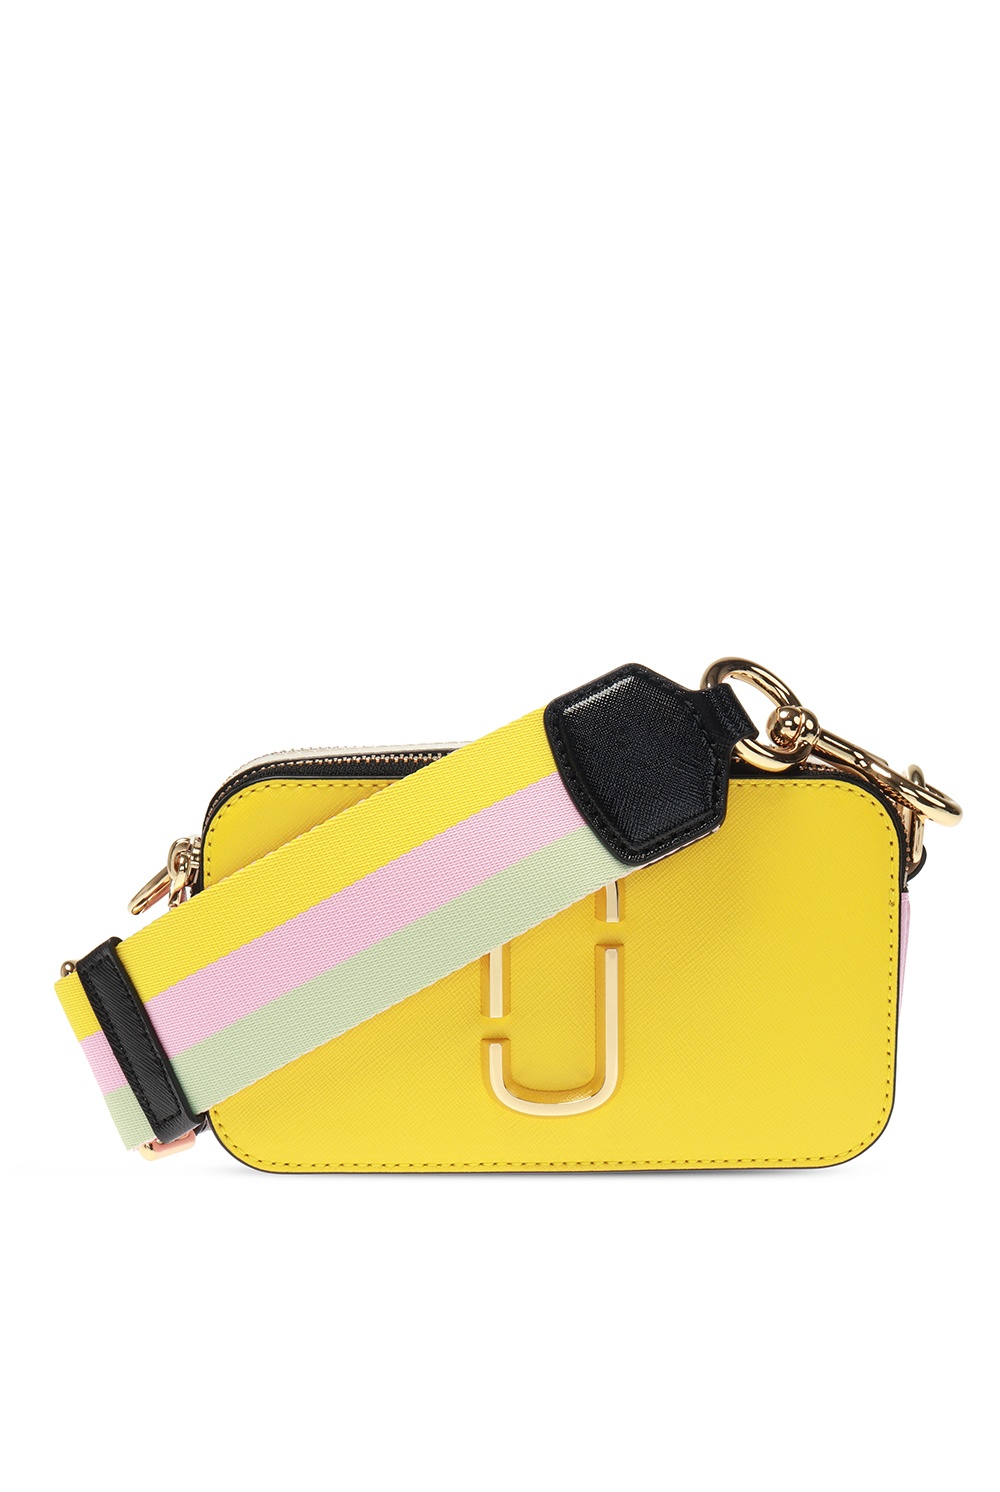 Marc Jacobs Yellow Small Snapshot Bag, ModeSens